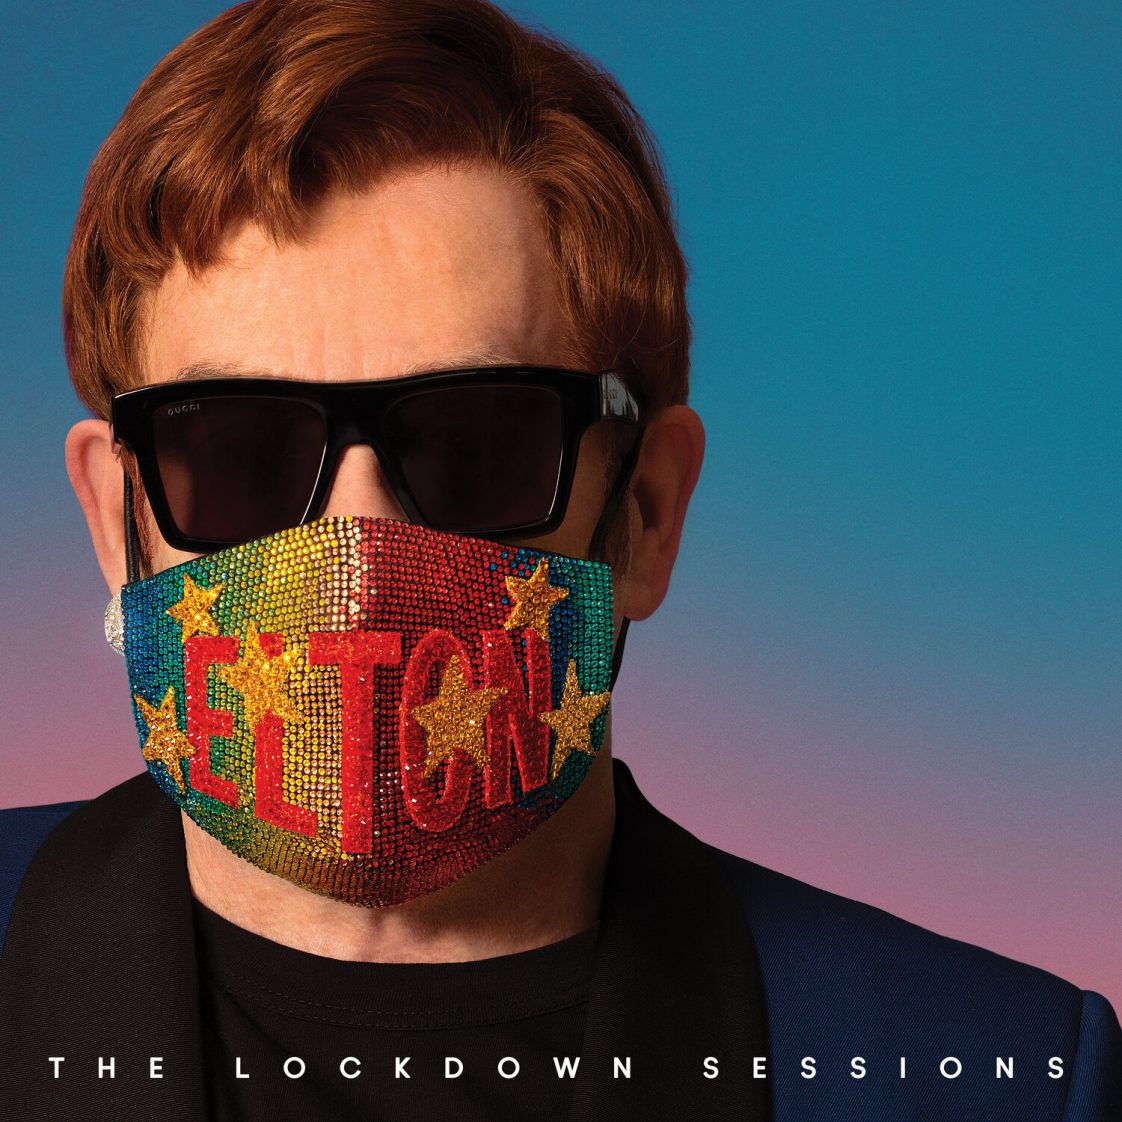 Elton John announces starstudded 'The Lockdown Sessions' album